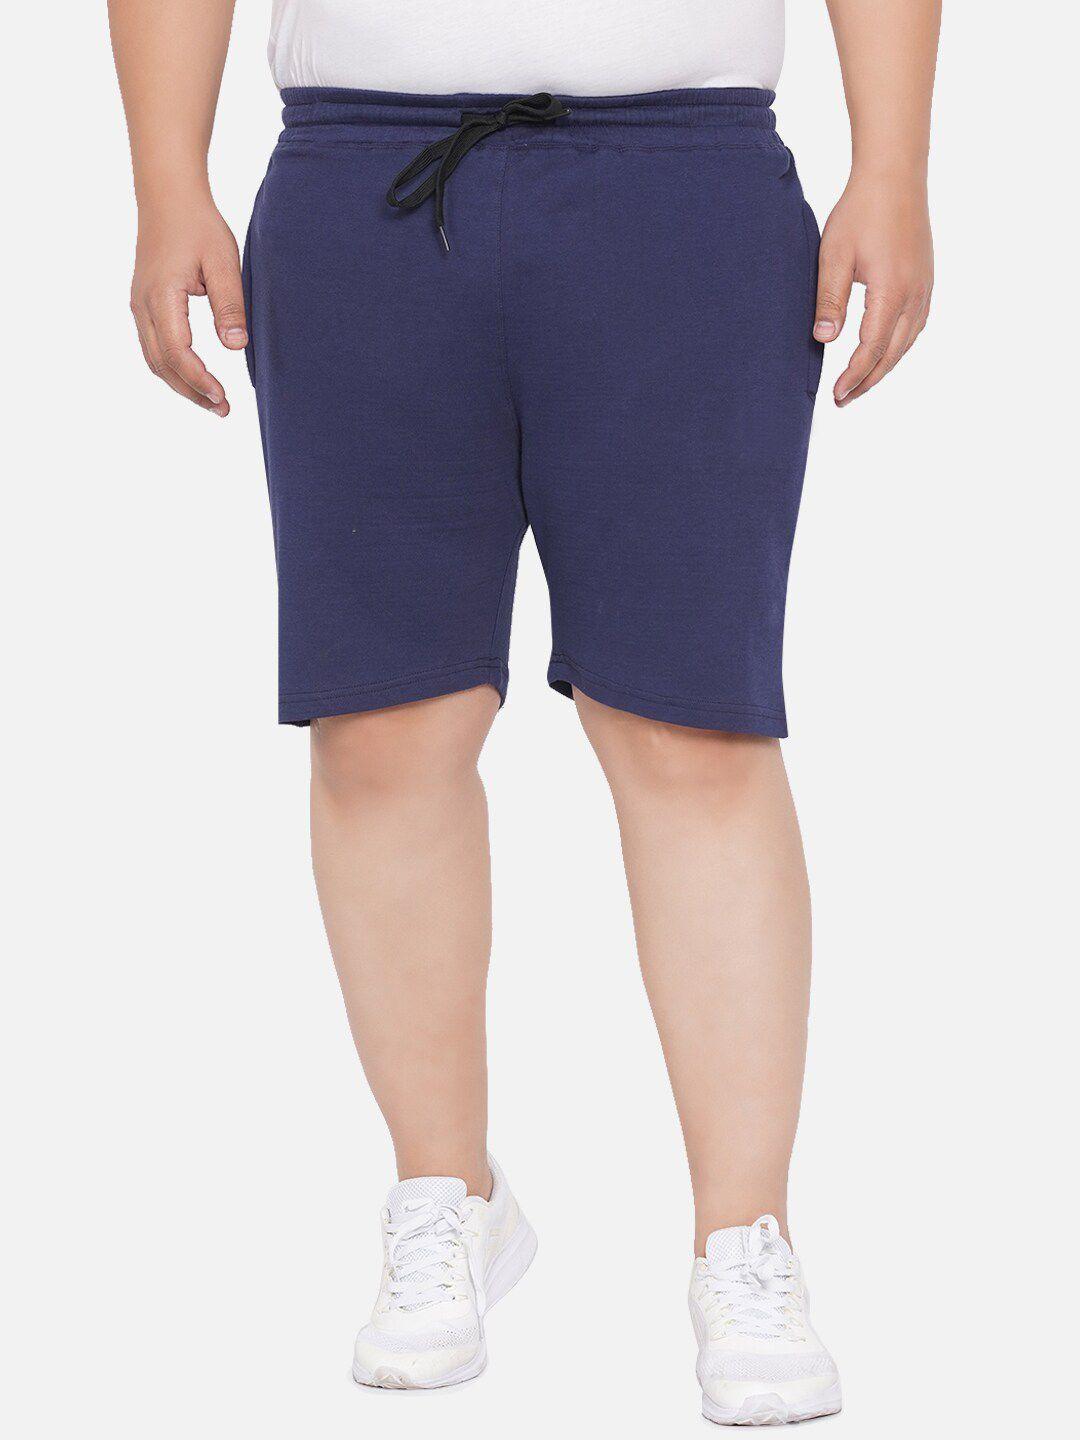 santonio men plus size pure cotton shorts